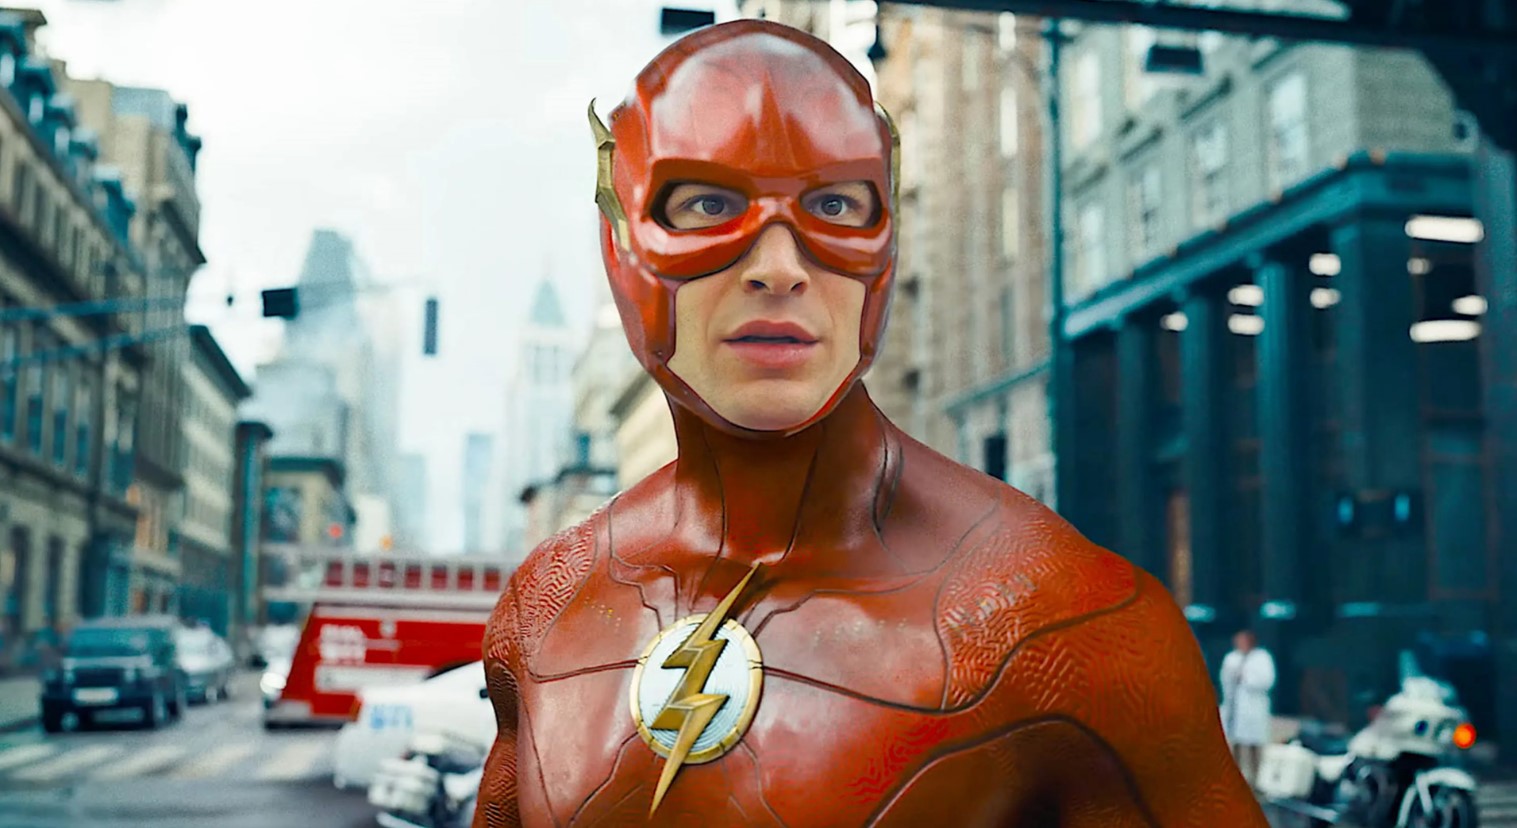 La película The Flash ha sido catalogada como una de las peores de 2023 por Variety, destacando sus problemas visuales y de trama.